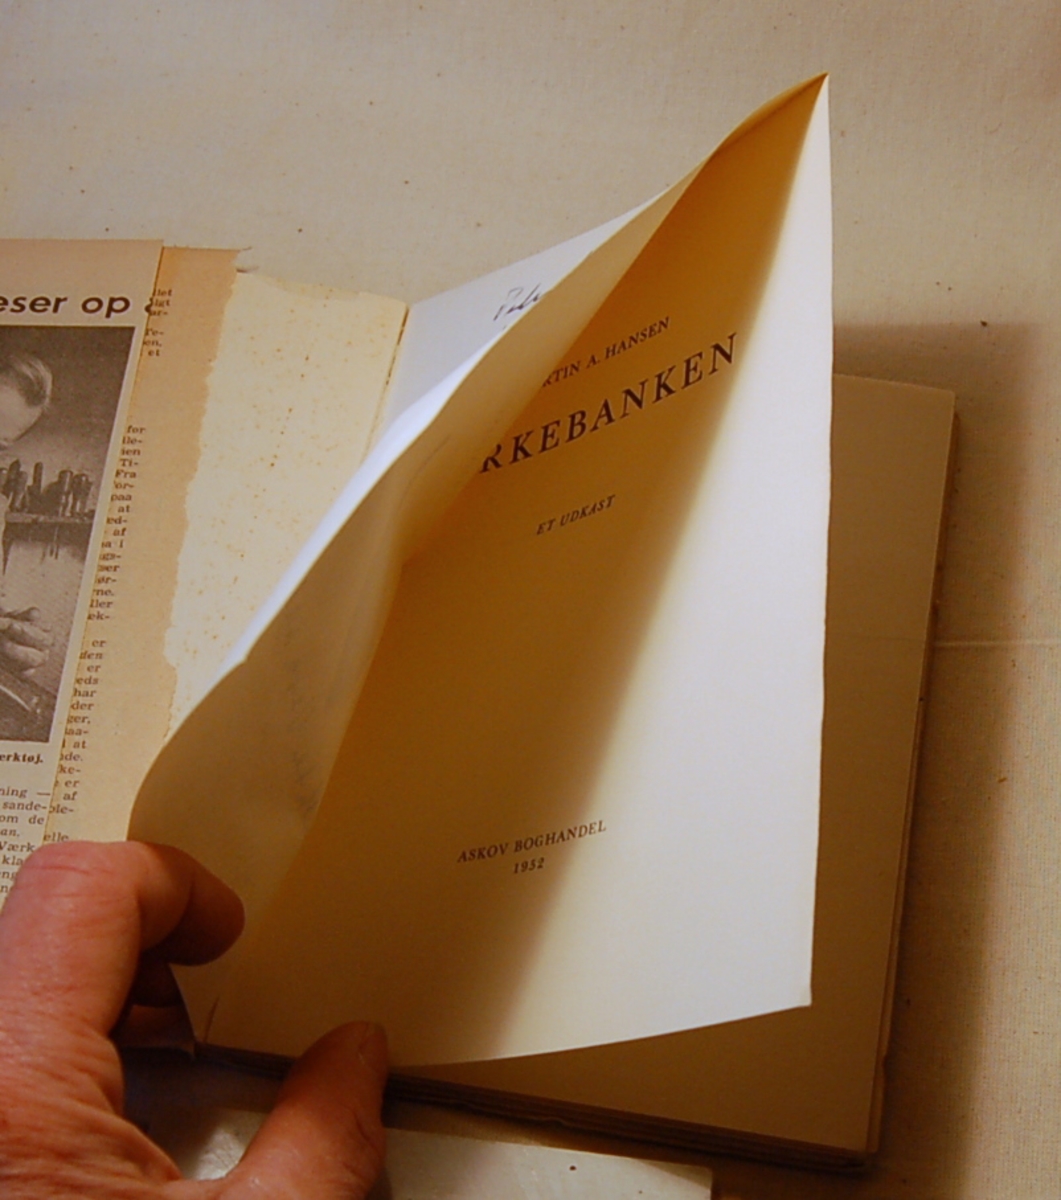 På bokens forside et motiv med to figurer. Til venstre en menneskelignende figur som har noe i den ene hånden. Til høyre en figur muligvis med vinger som bærer et kors.